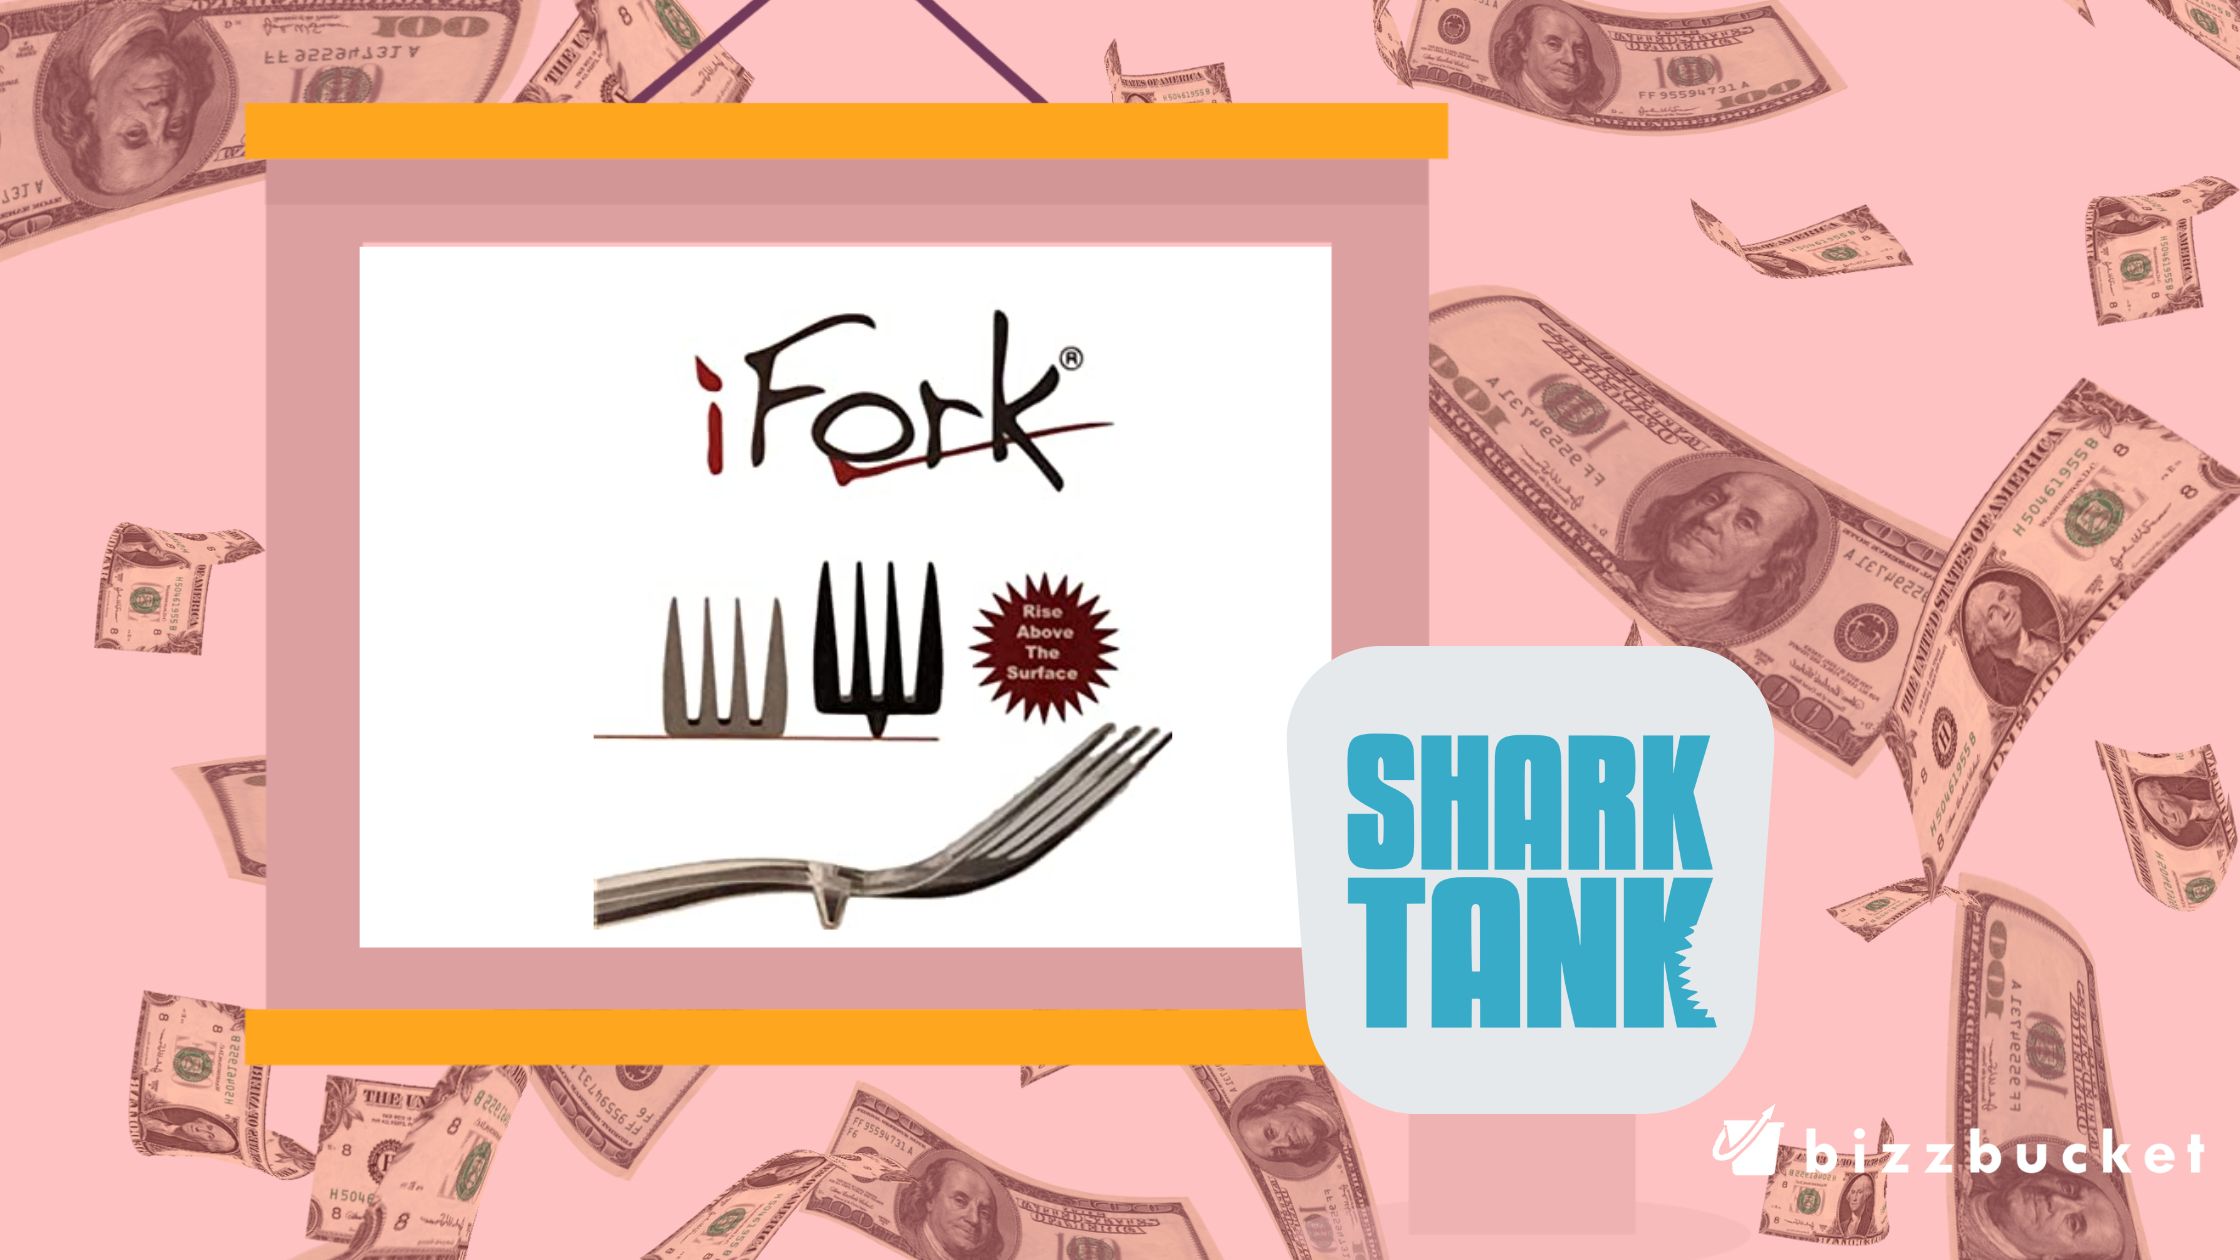 iFork shark tank update